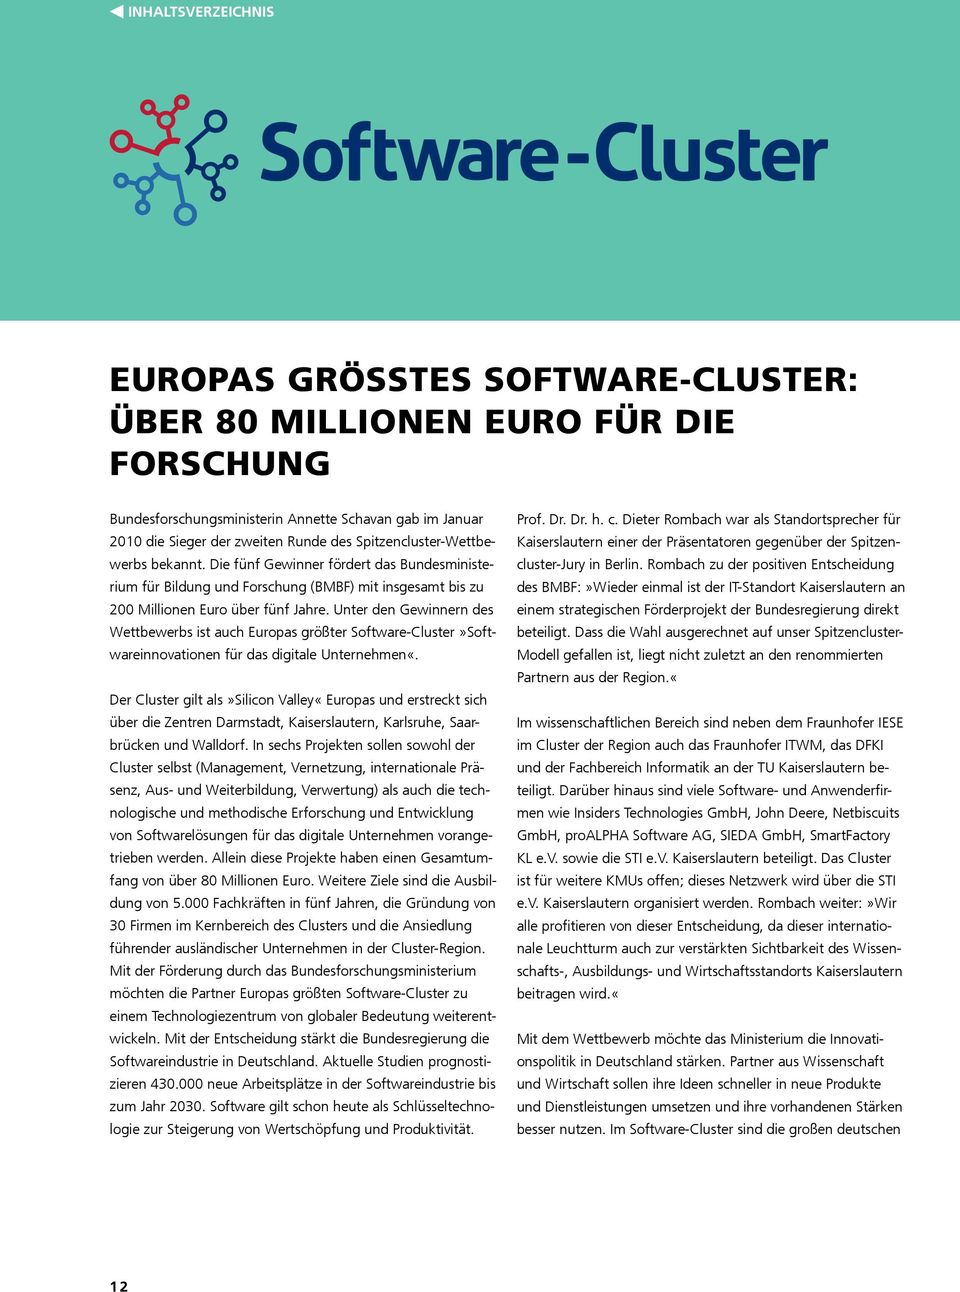 Unter den Gewinnern des Wettbewerbs ist auch Europas größter Software-Cluster»Softwareinnovationen für das digitale Unternehmen«.